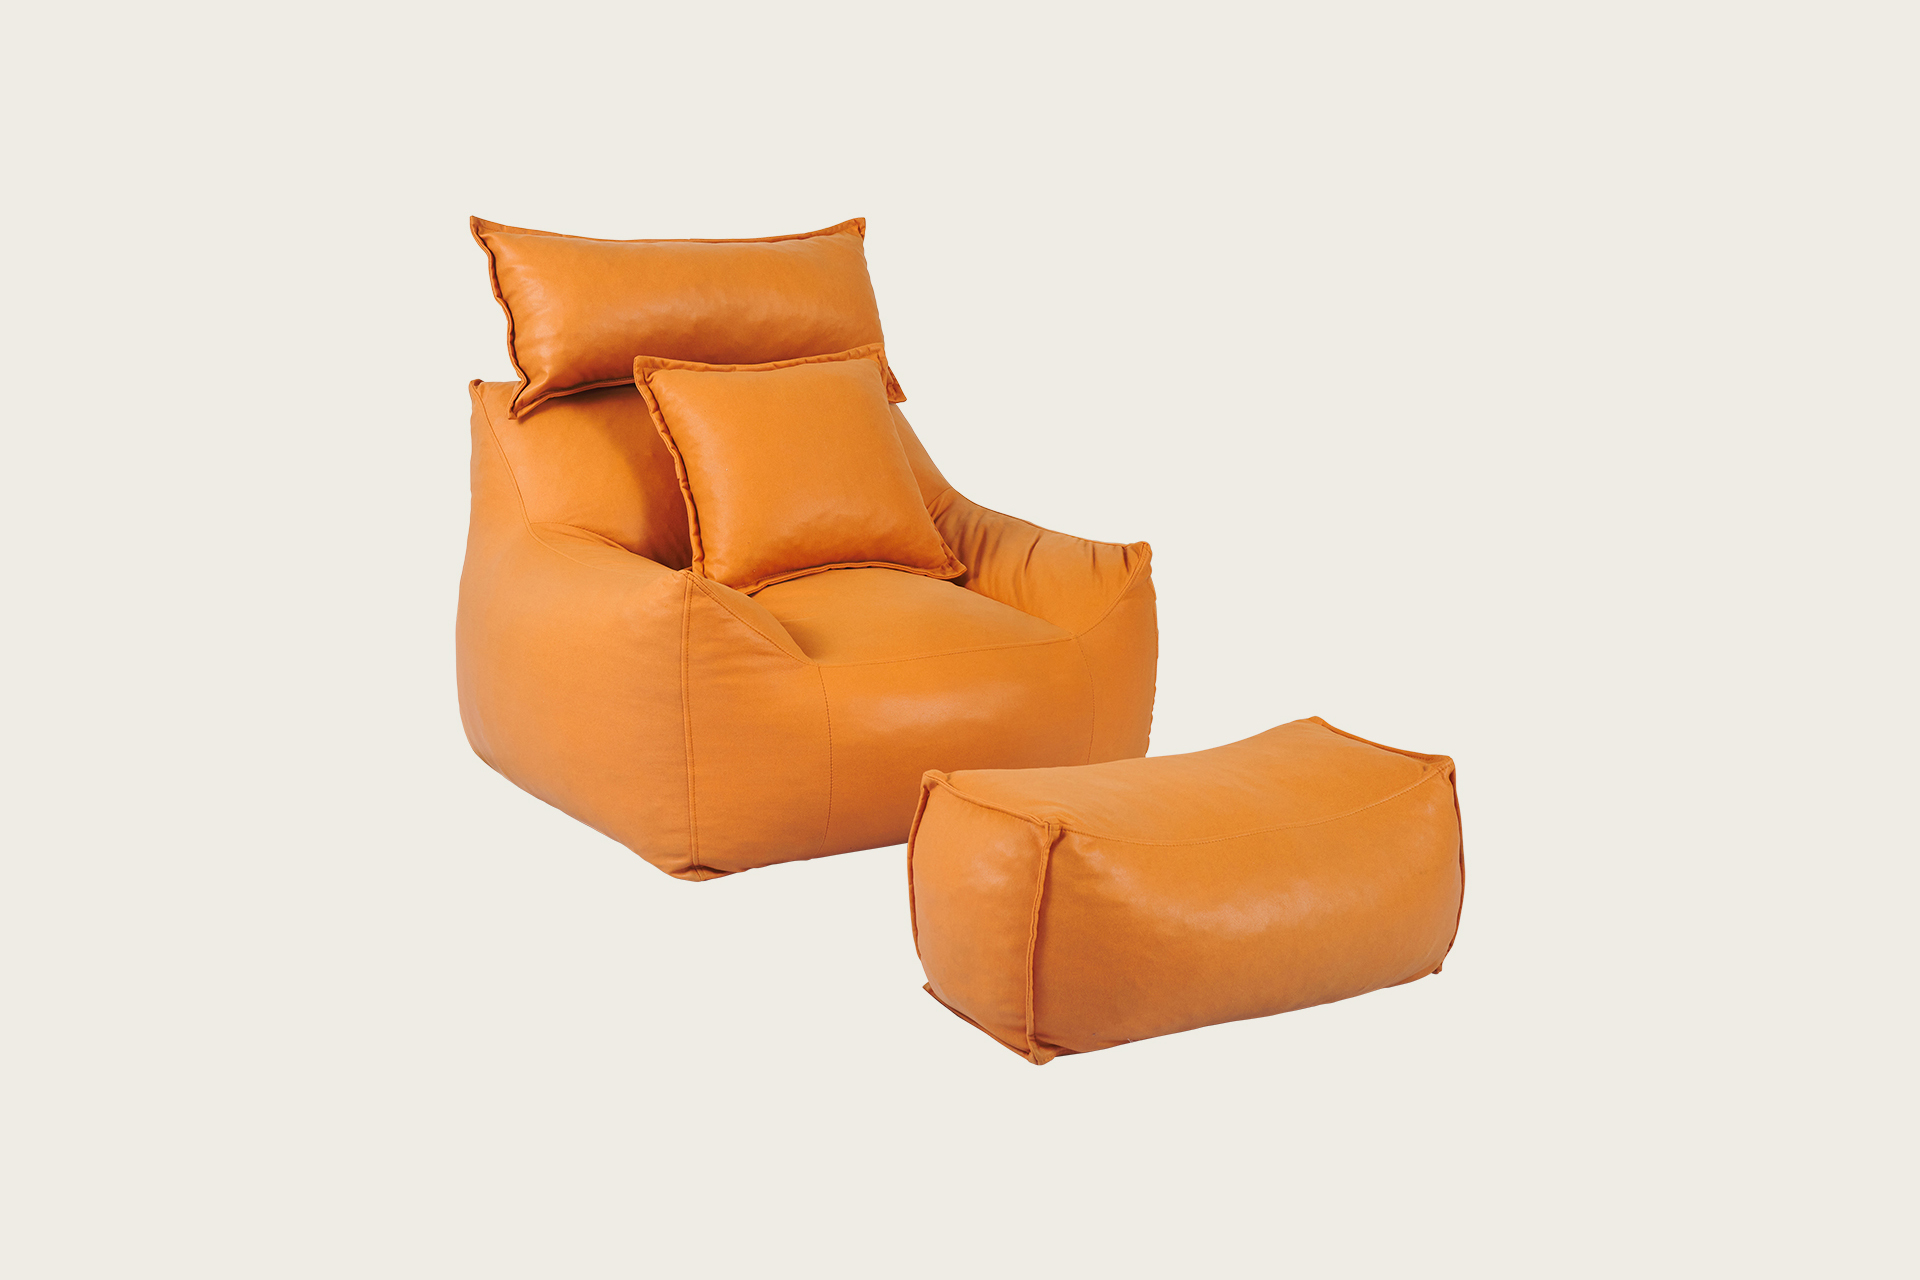 懶人梳化 - 橙銅色  (W95 x D90+25 x H85cm) 